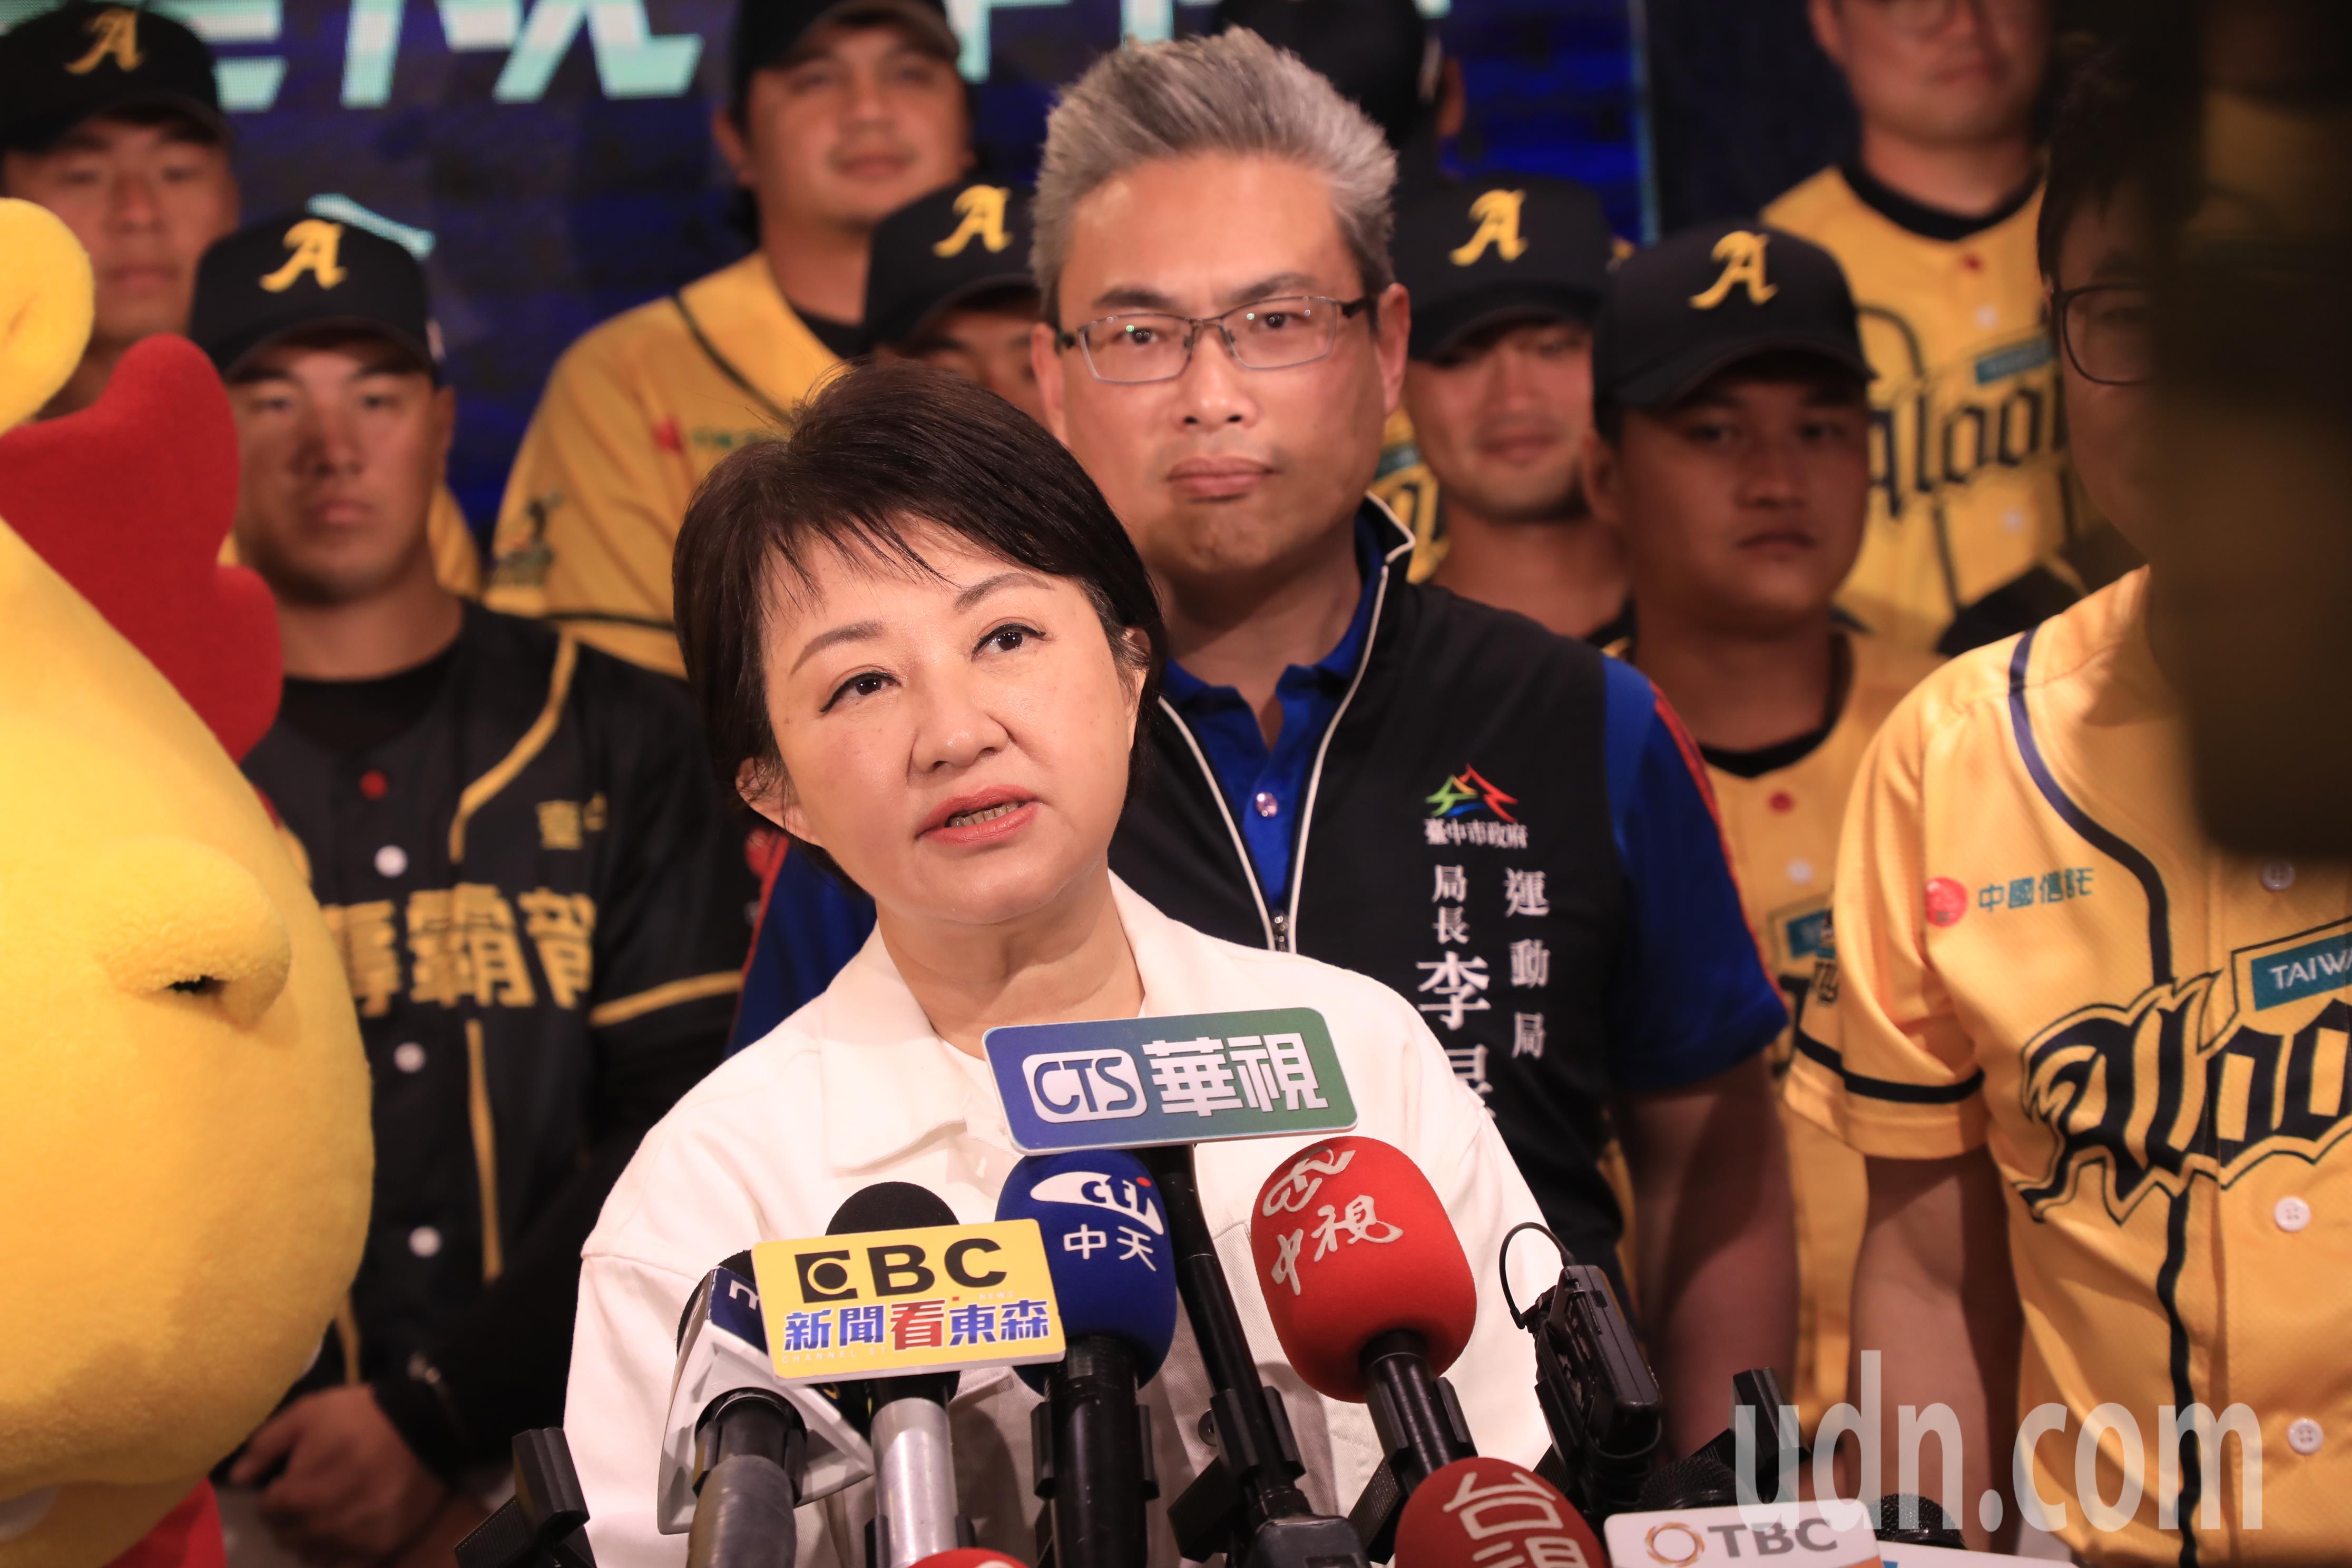 台中市长卢秀燕今表示，明天她会留在台中视察水情，请副市长到行政院会提案，希望中央调涨电价要慎重。记者余采滢／摄影